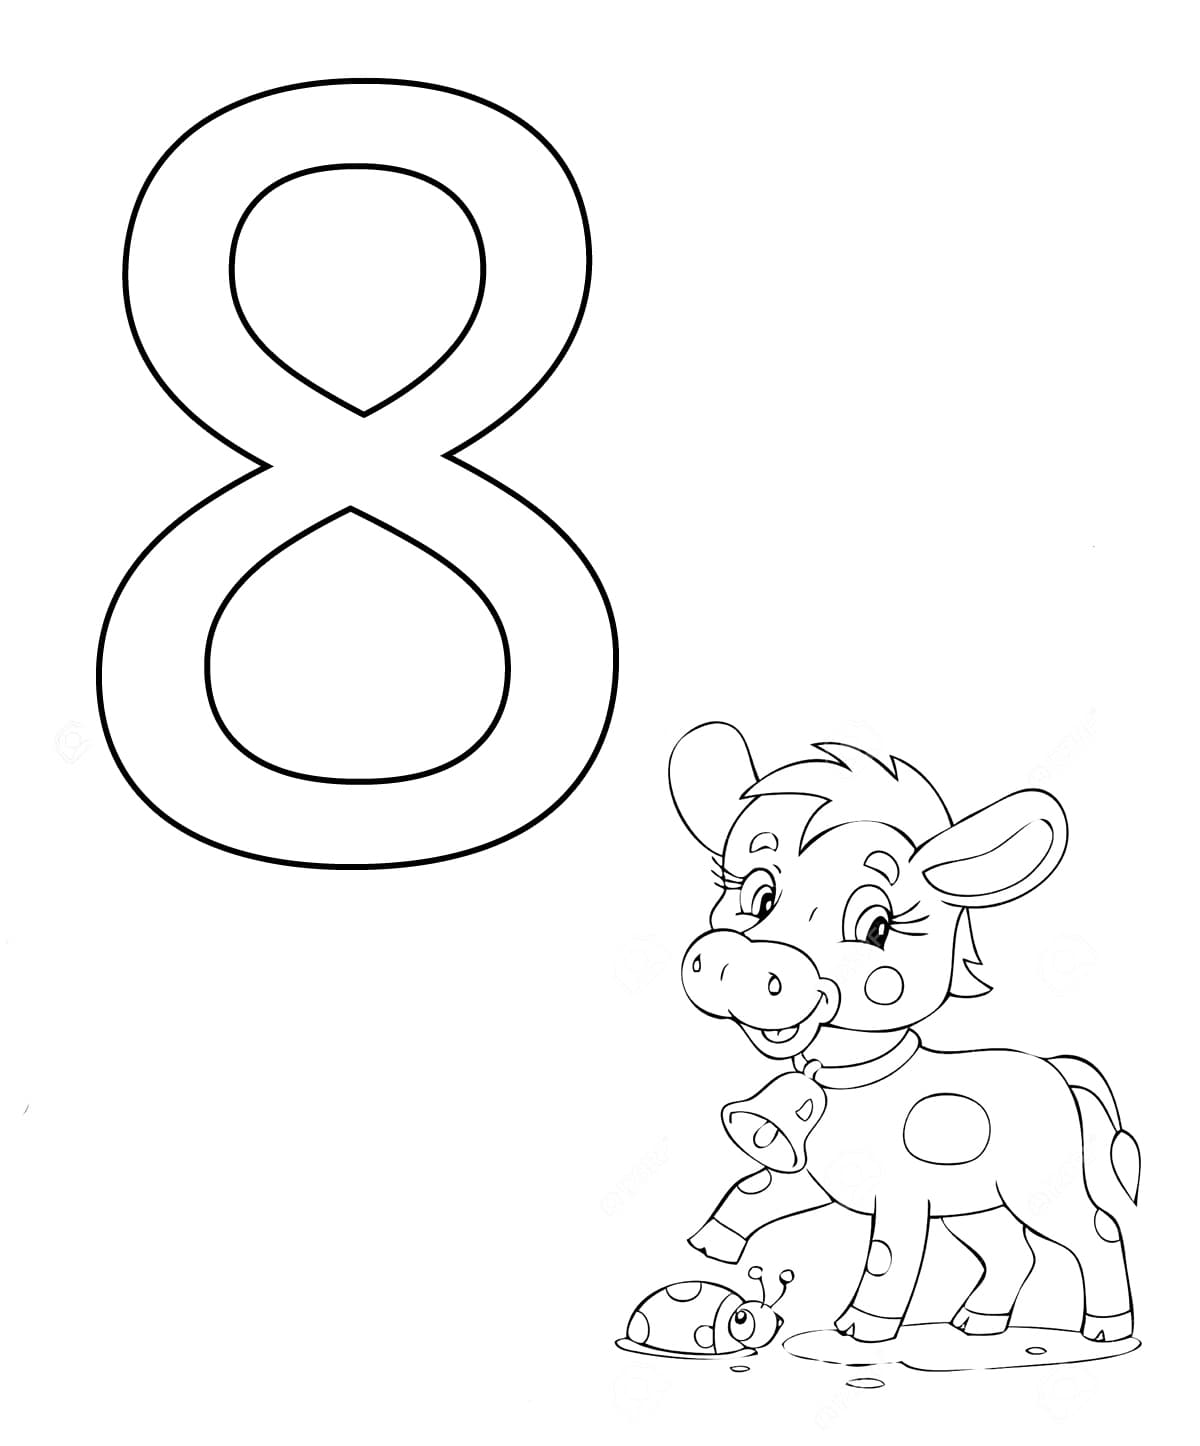 Цифра 8 и теленок